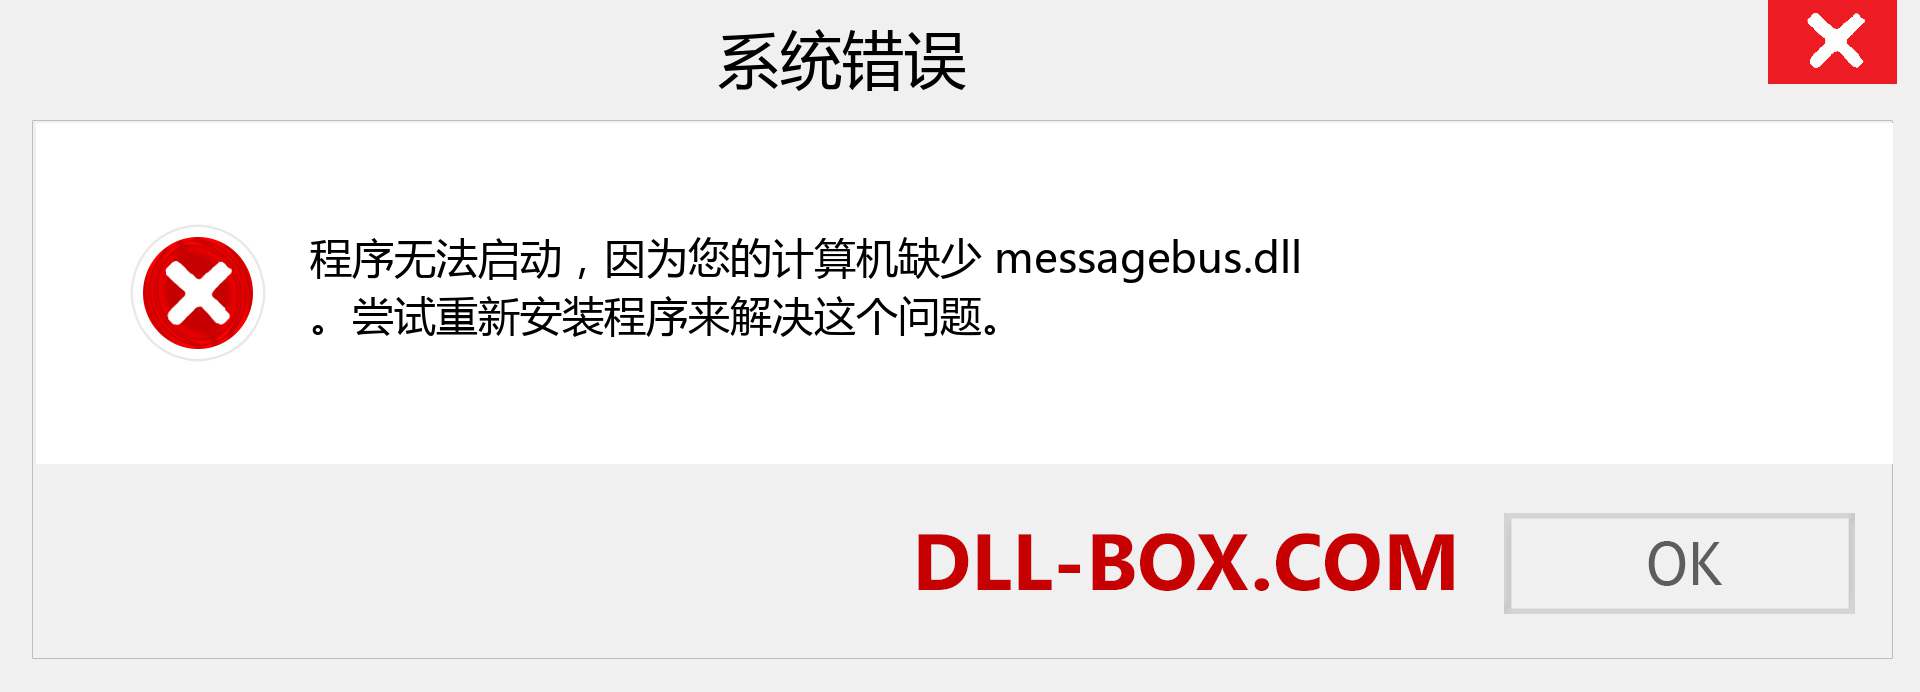 messagebus.dll 文件丢失？。 适用于 Windows 7、8、10 的下载 - 修复 Windows、照片、图像上的 messagebus dll 丢失错误